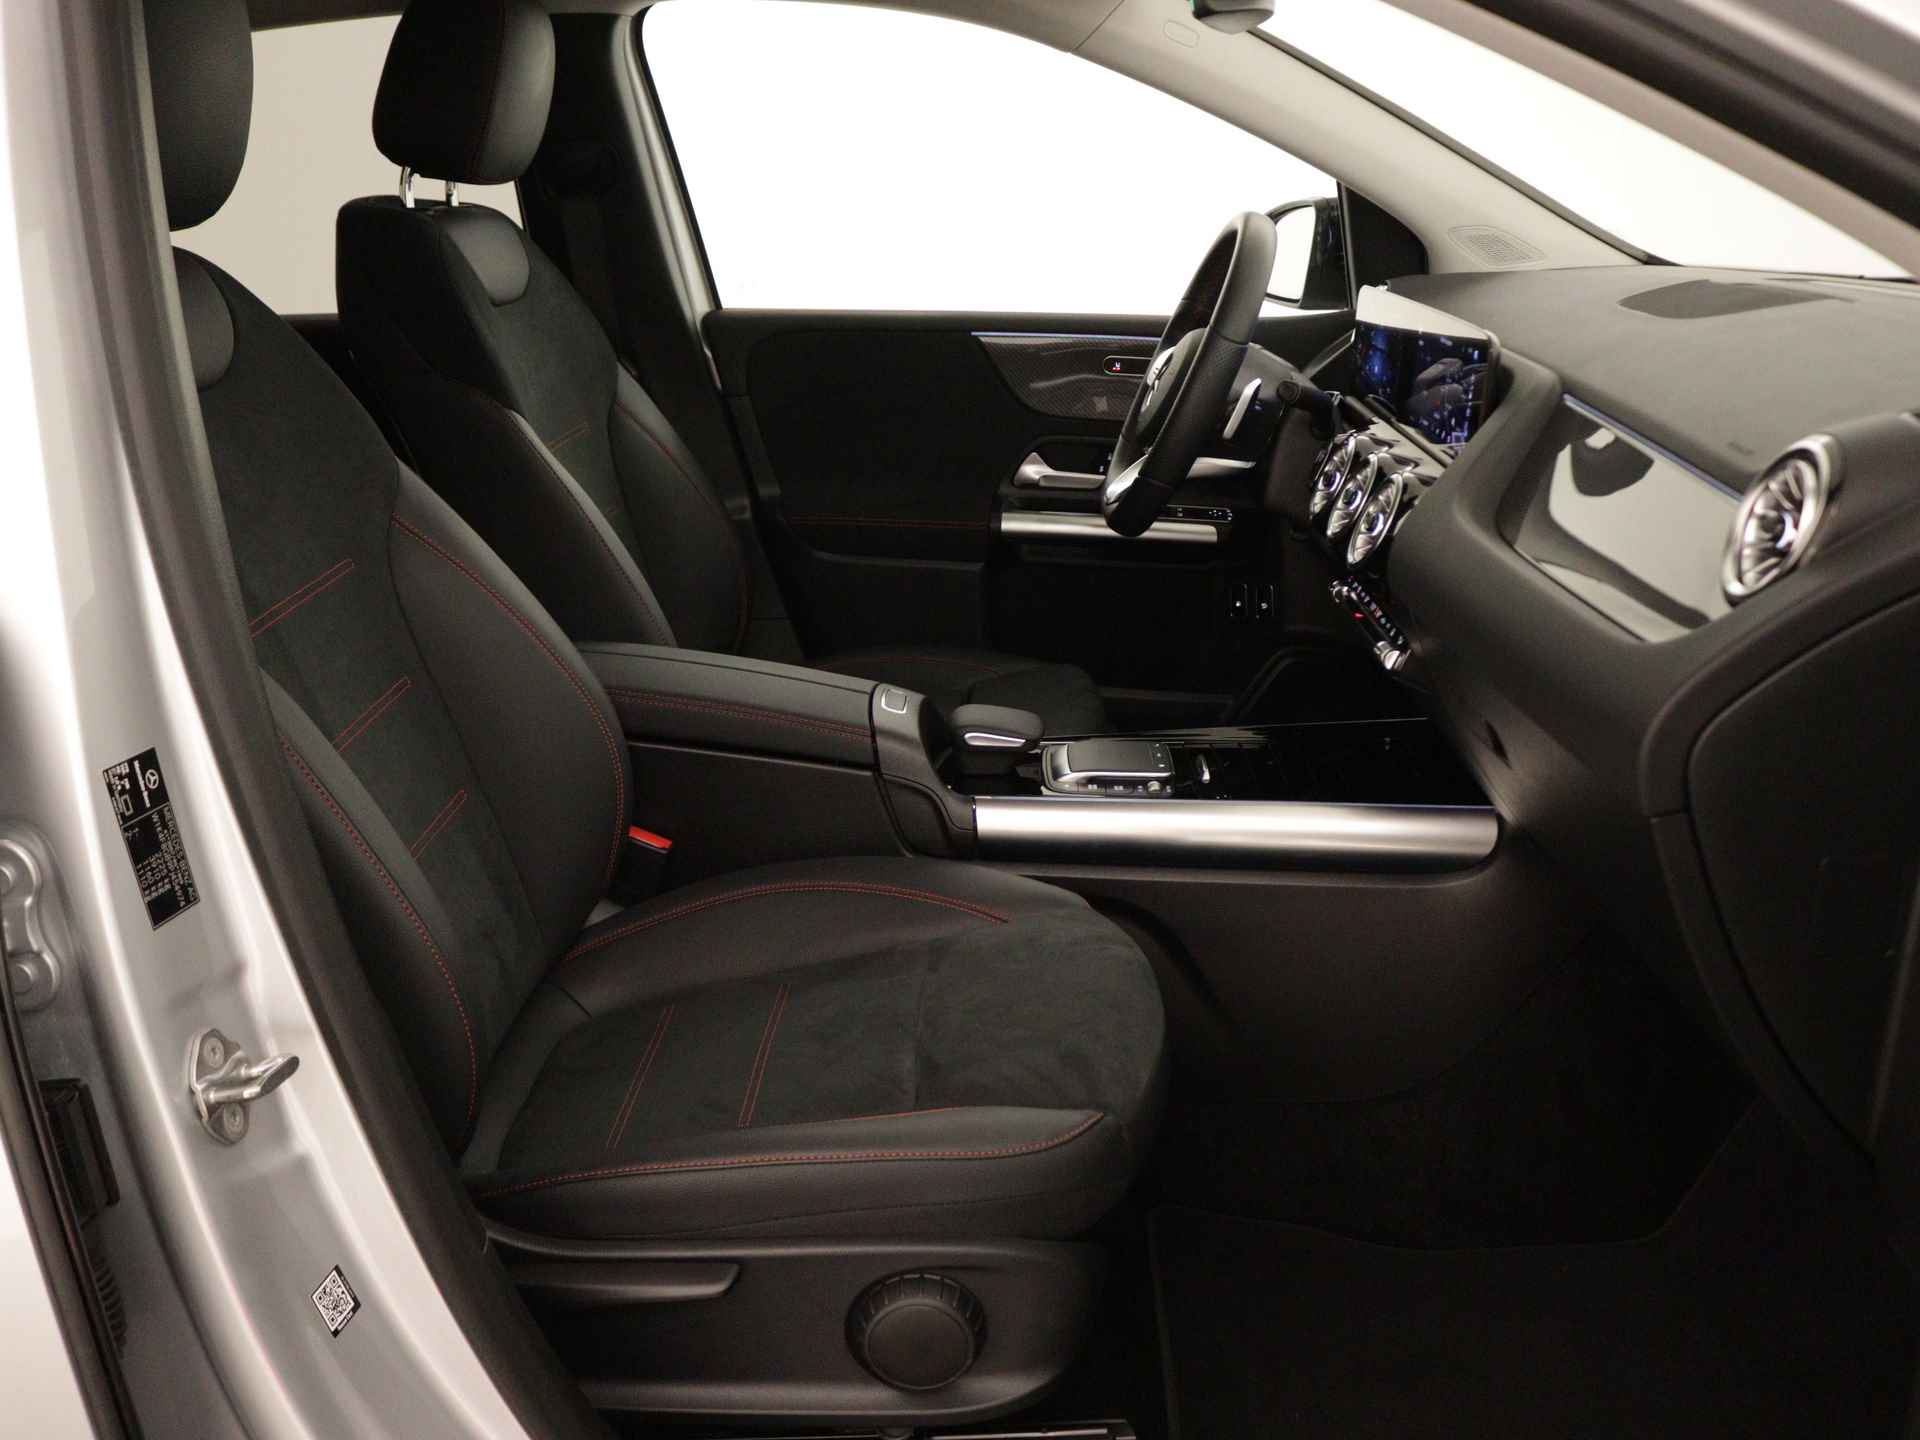 Mercedes-Benz B-Klasse 250 e AMG Line Limited Multispaaks lichtmetalen velgen | MBUX wide screen | Navigatie | Parking support | Inclusief 24 maanden Mercedes-Benz Certified garantie voor Europa. | - 30/45